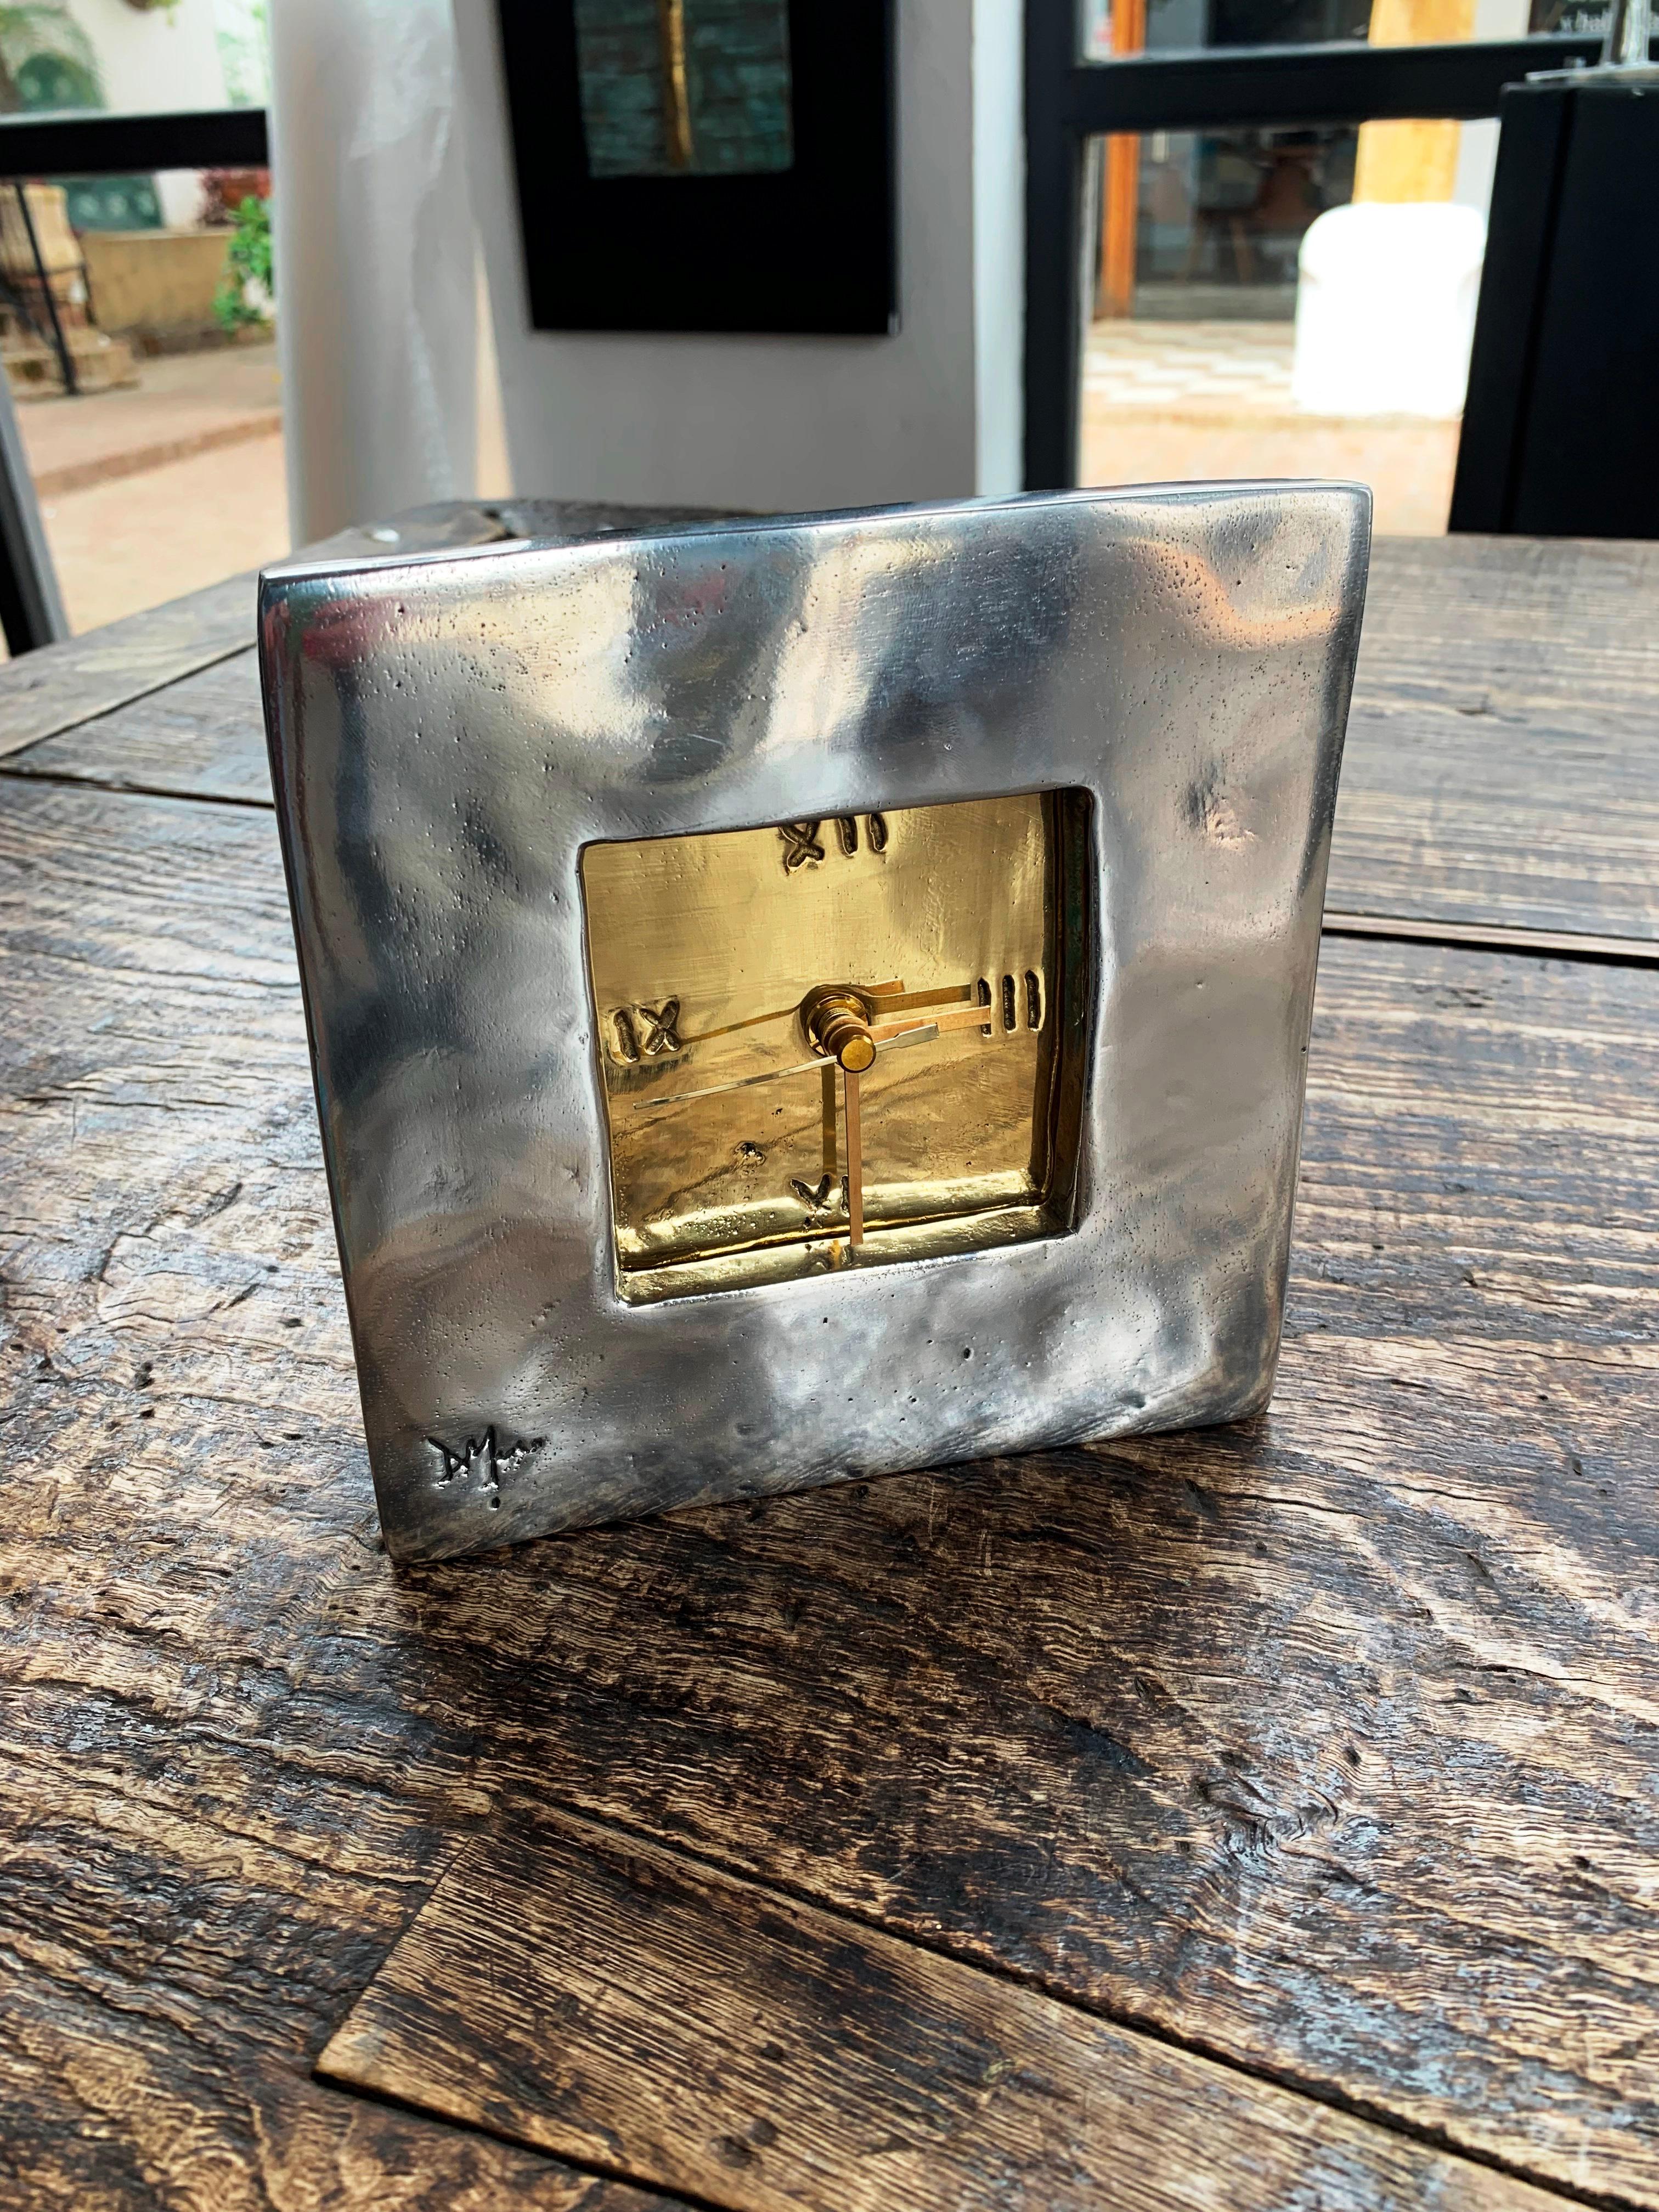 Spanish DO16 Square  Clock, Gold and aluminium coloured,  Solid cast Brass & Aluminium For Sale